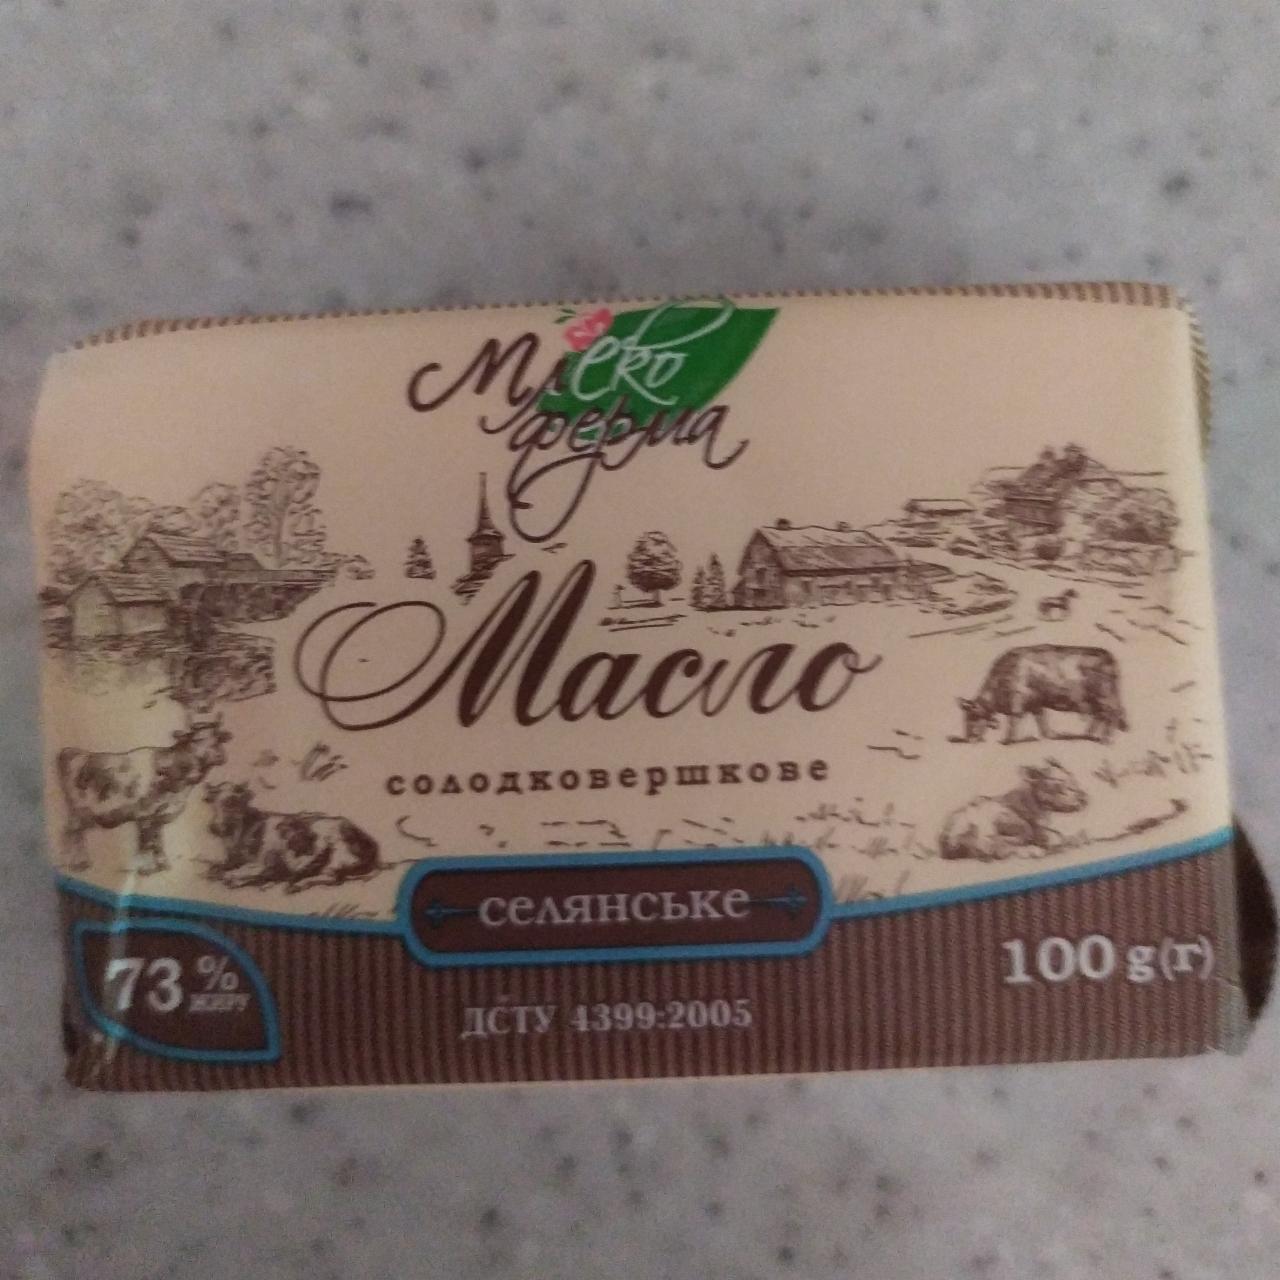 Фото - Масло 73% сладкосливочное Крестьянское Млекоферма